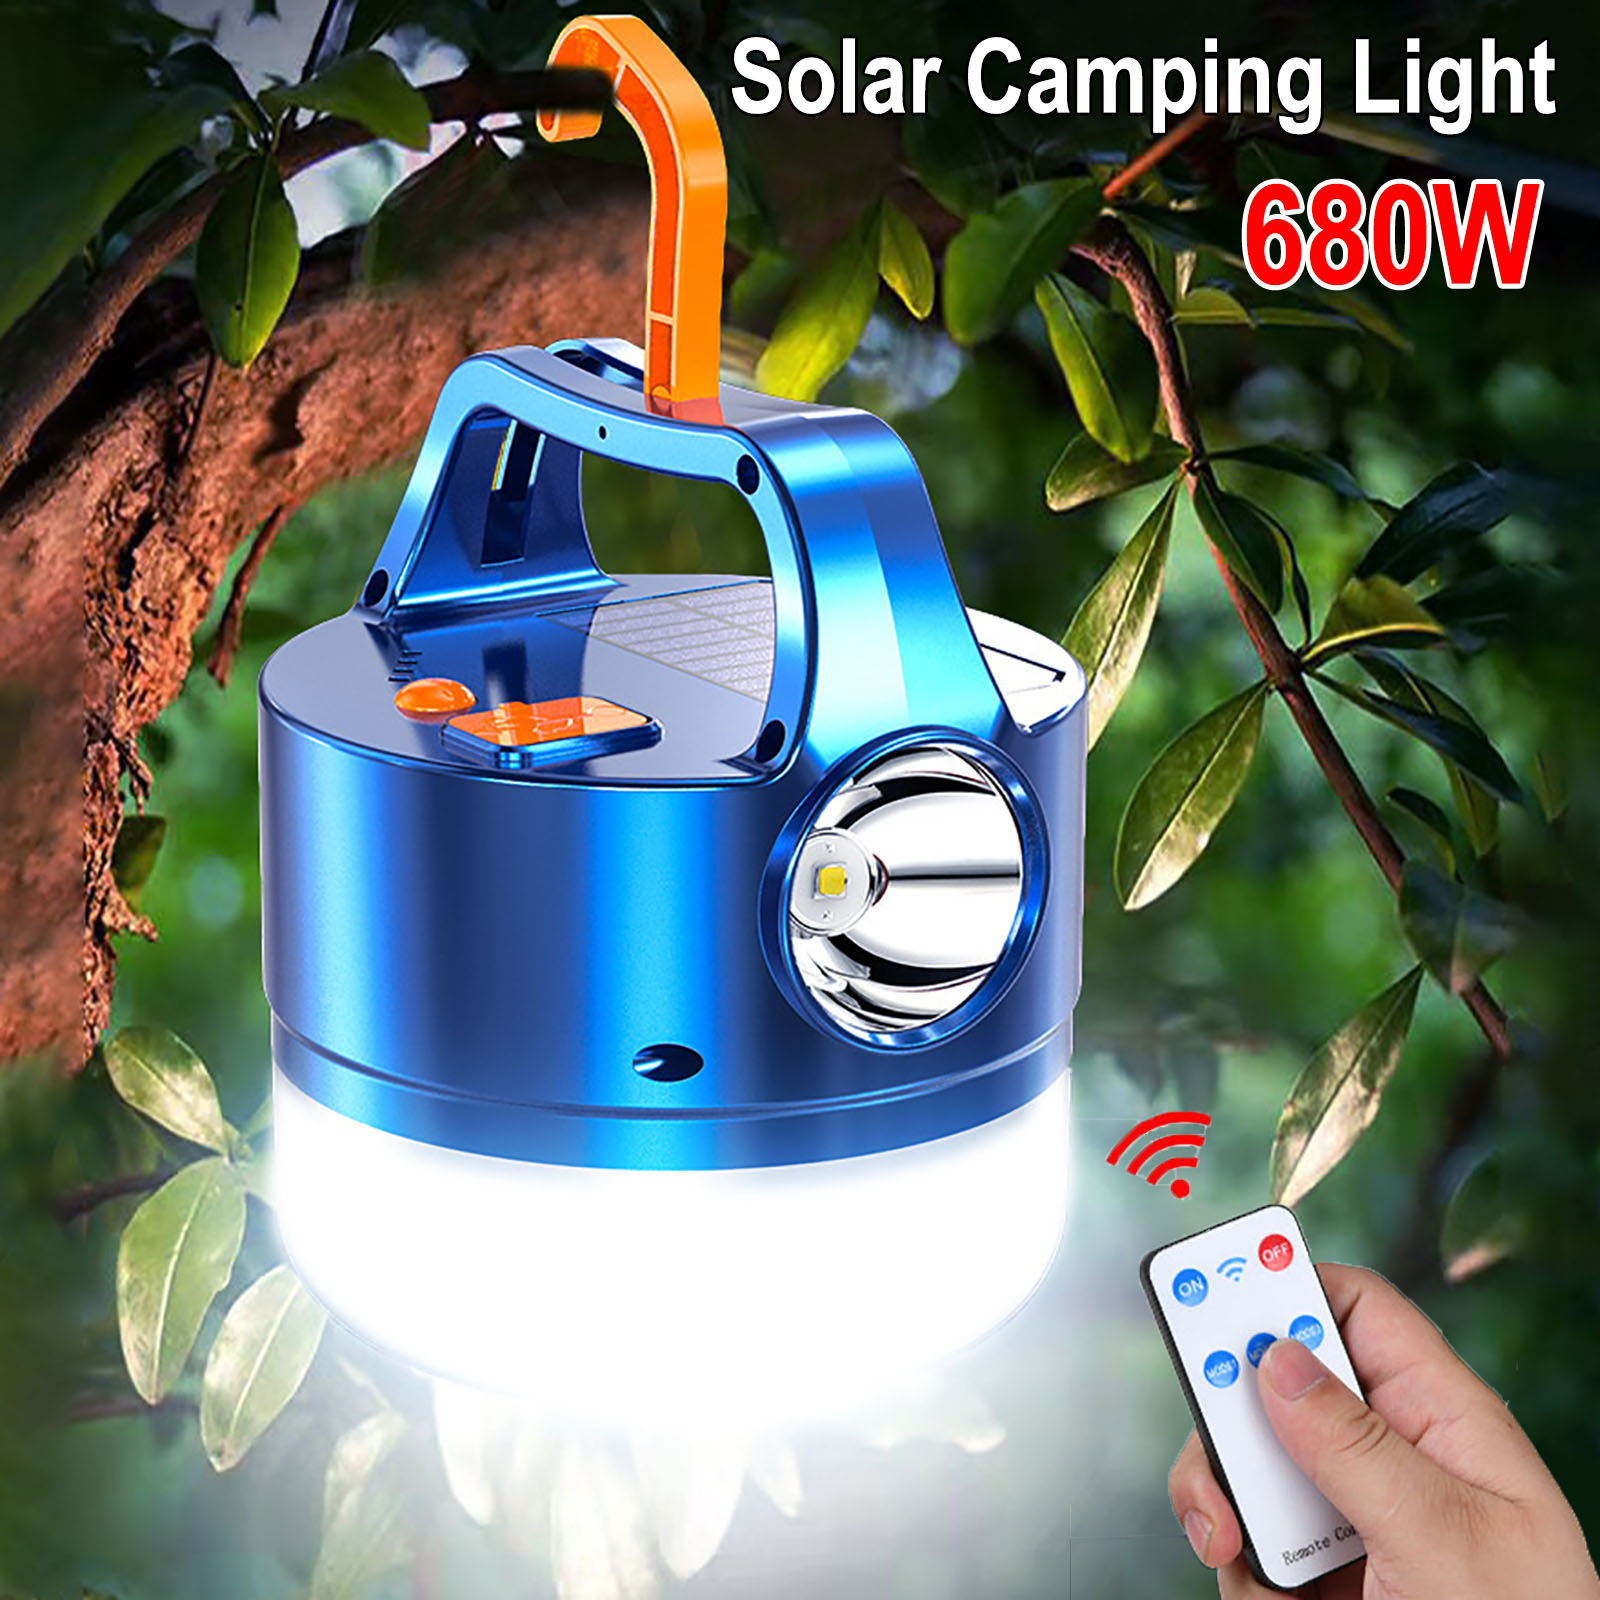 680W 태양 LED 캠핑 라이트 휴대용 USB 충전식 전구 야외 캠핑 하이킹 비상 조명 태양 조명 서치 라이트